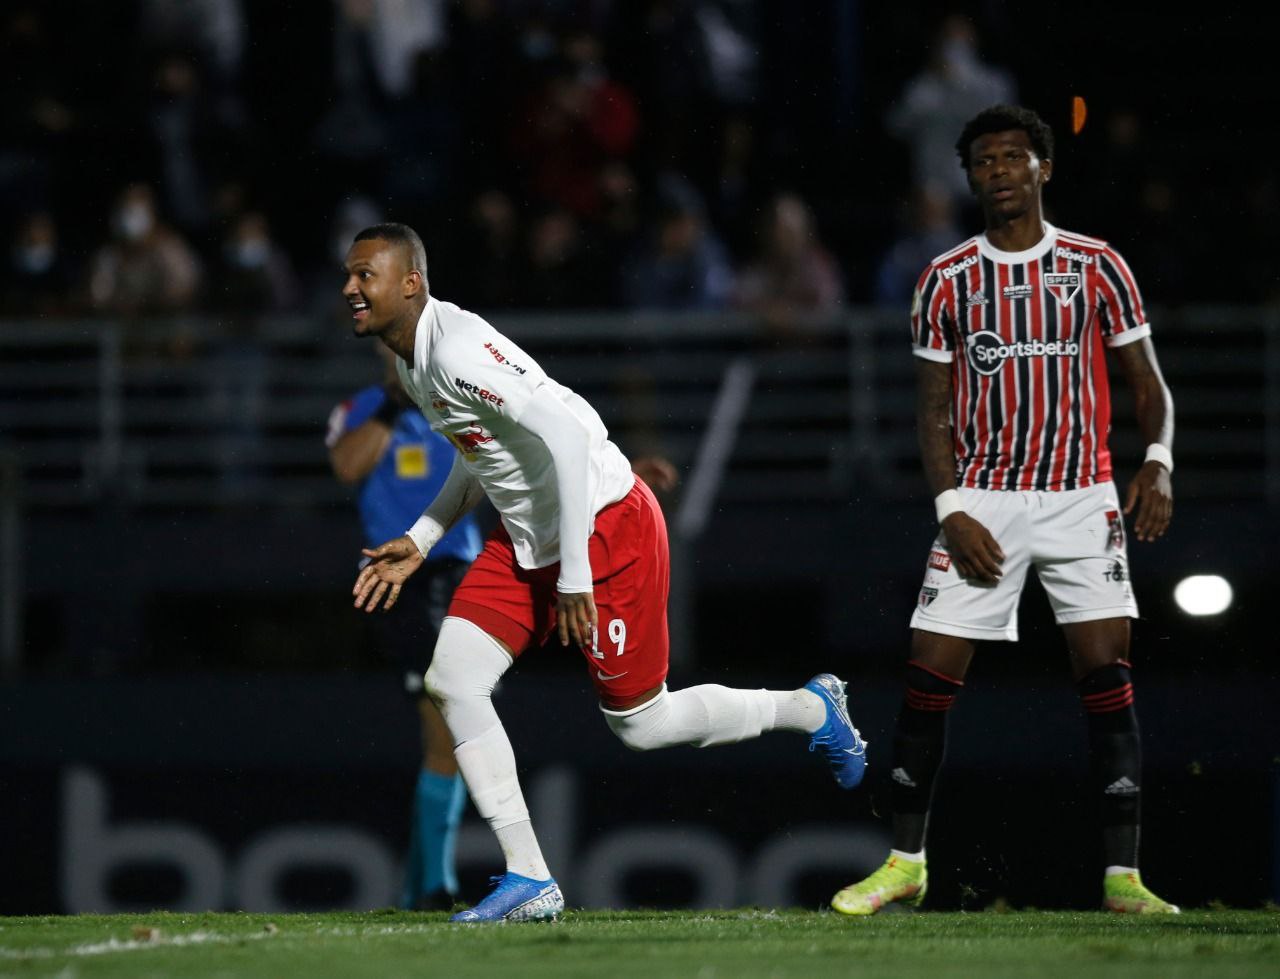 Luan Cândido comemora gol diante do São Paulo. Foto: Ari Ferreira/Red Bull Bragantino